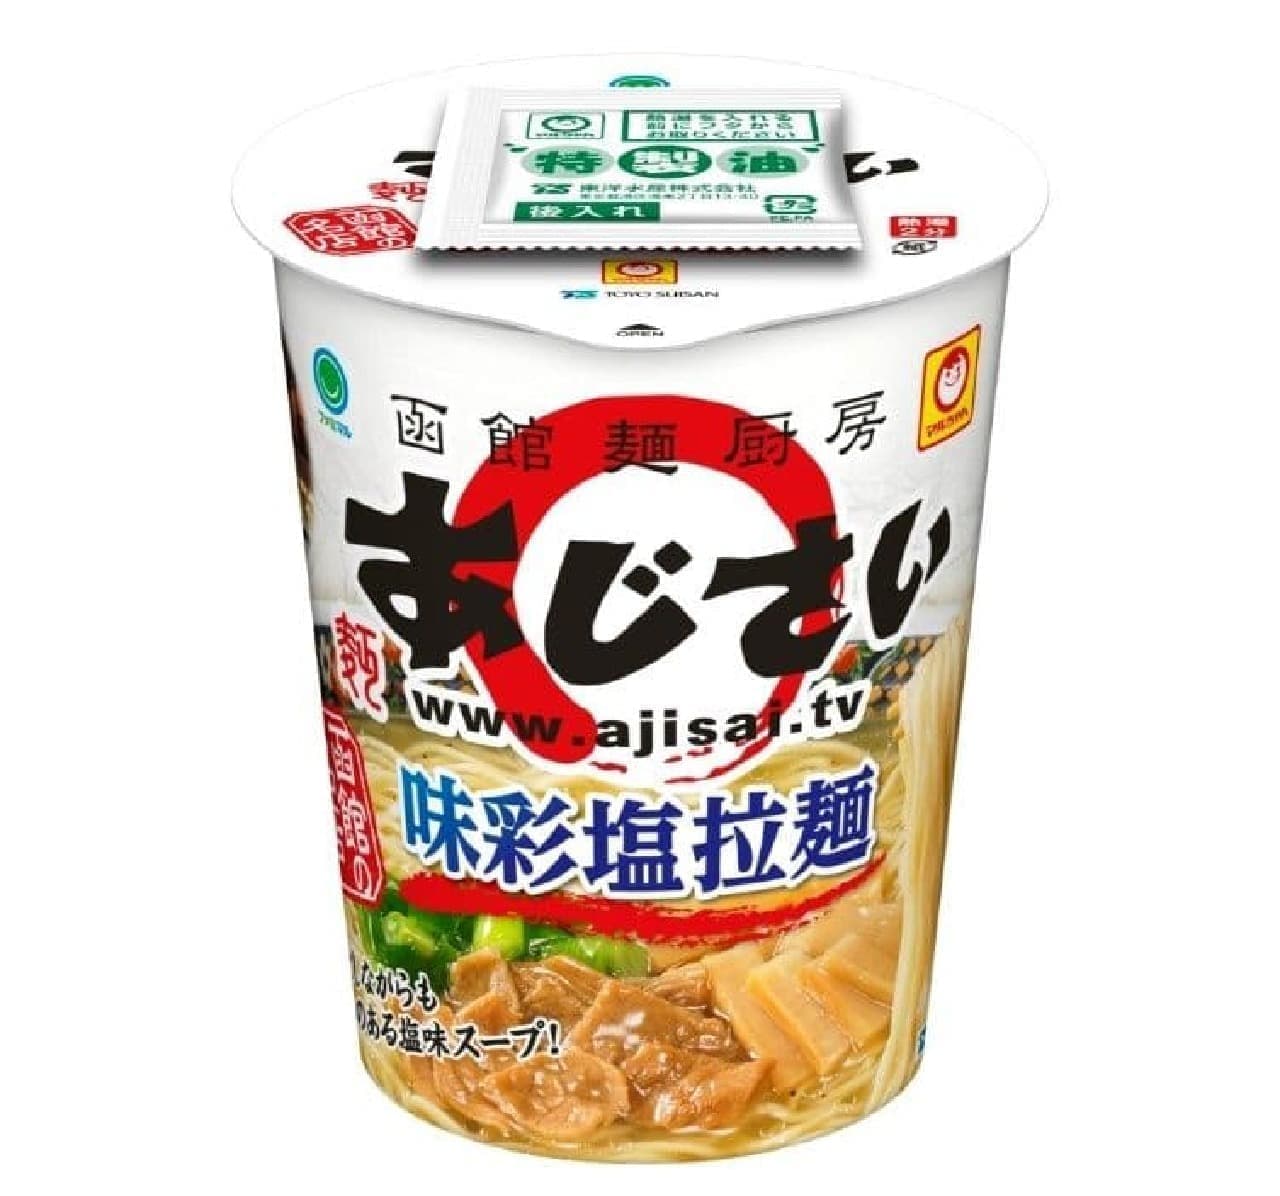 ファミリーマート「函館麺厨房 あじさい 味彩塩拉麺」